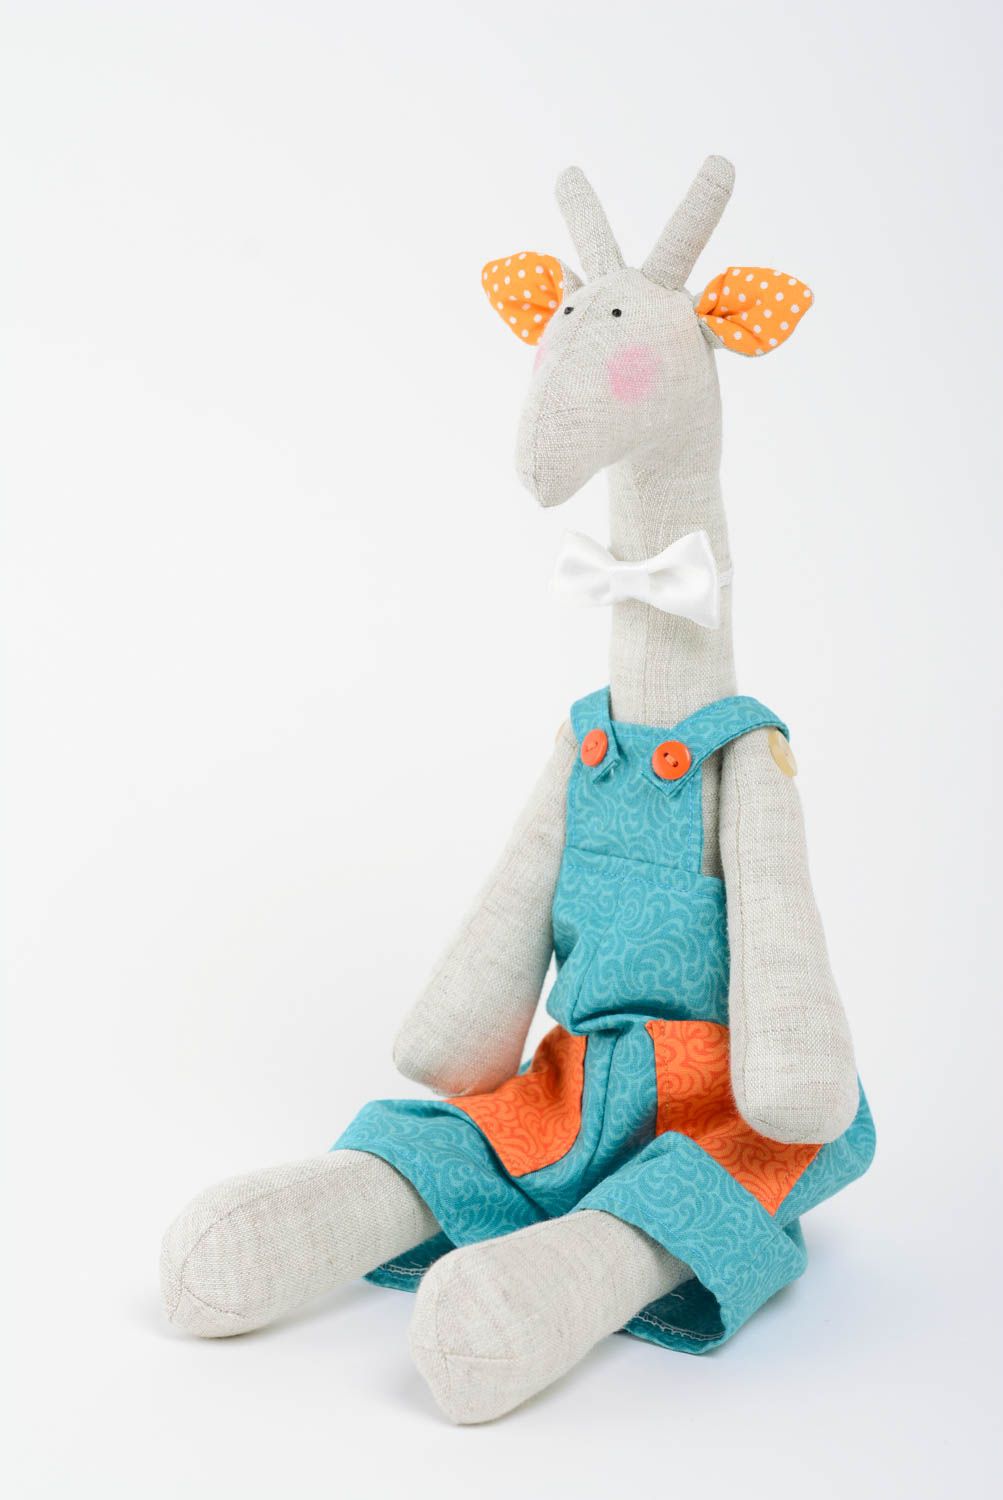 Handmade Stofftier Giraffe aus Textil Spielzeug für Kinder und Haus Deko foto 1